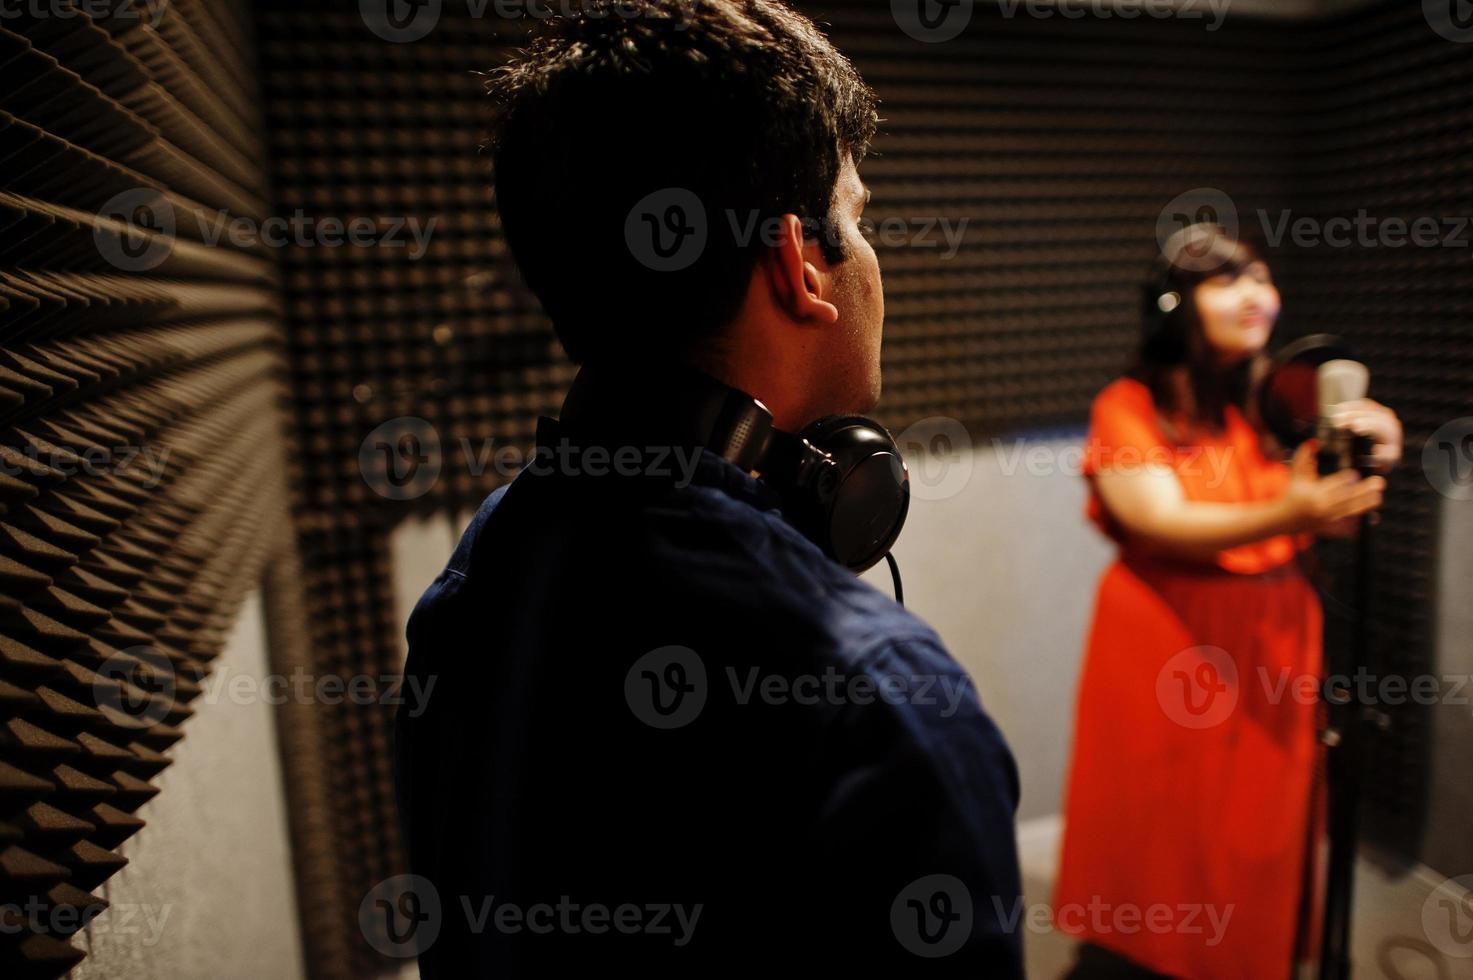 jong Aziatisch duet zangers met microfoon opname lied in Vermelding muziek- studio. foto